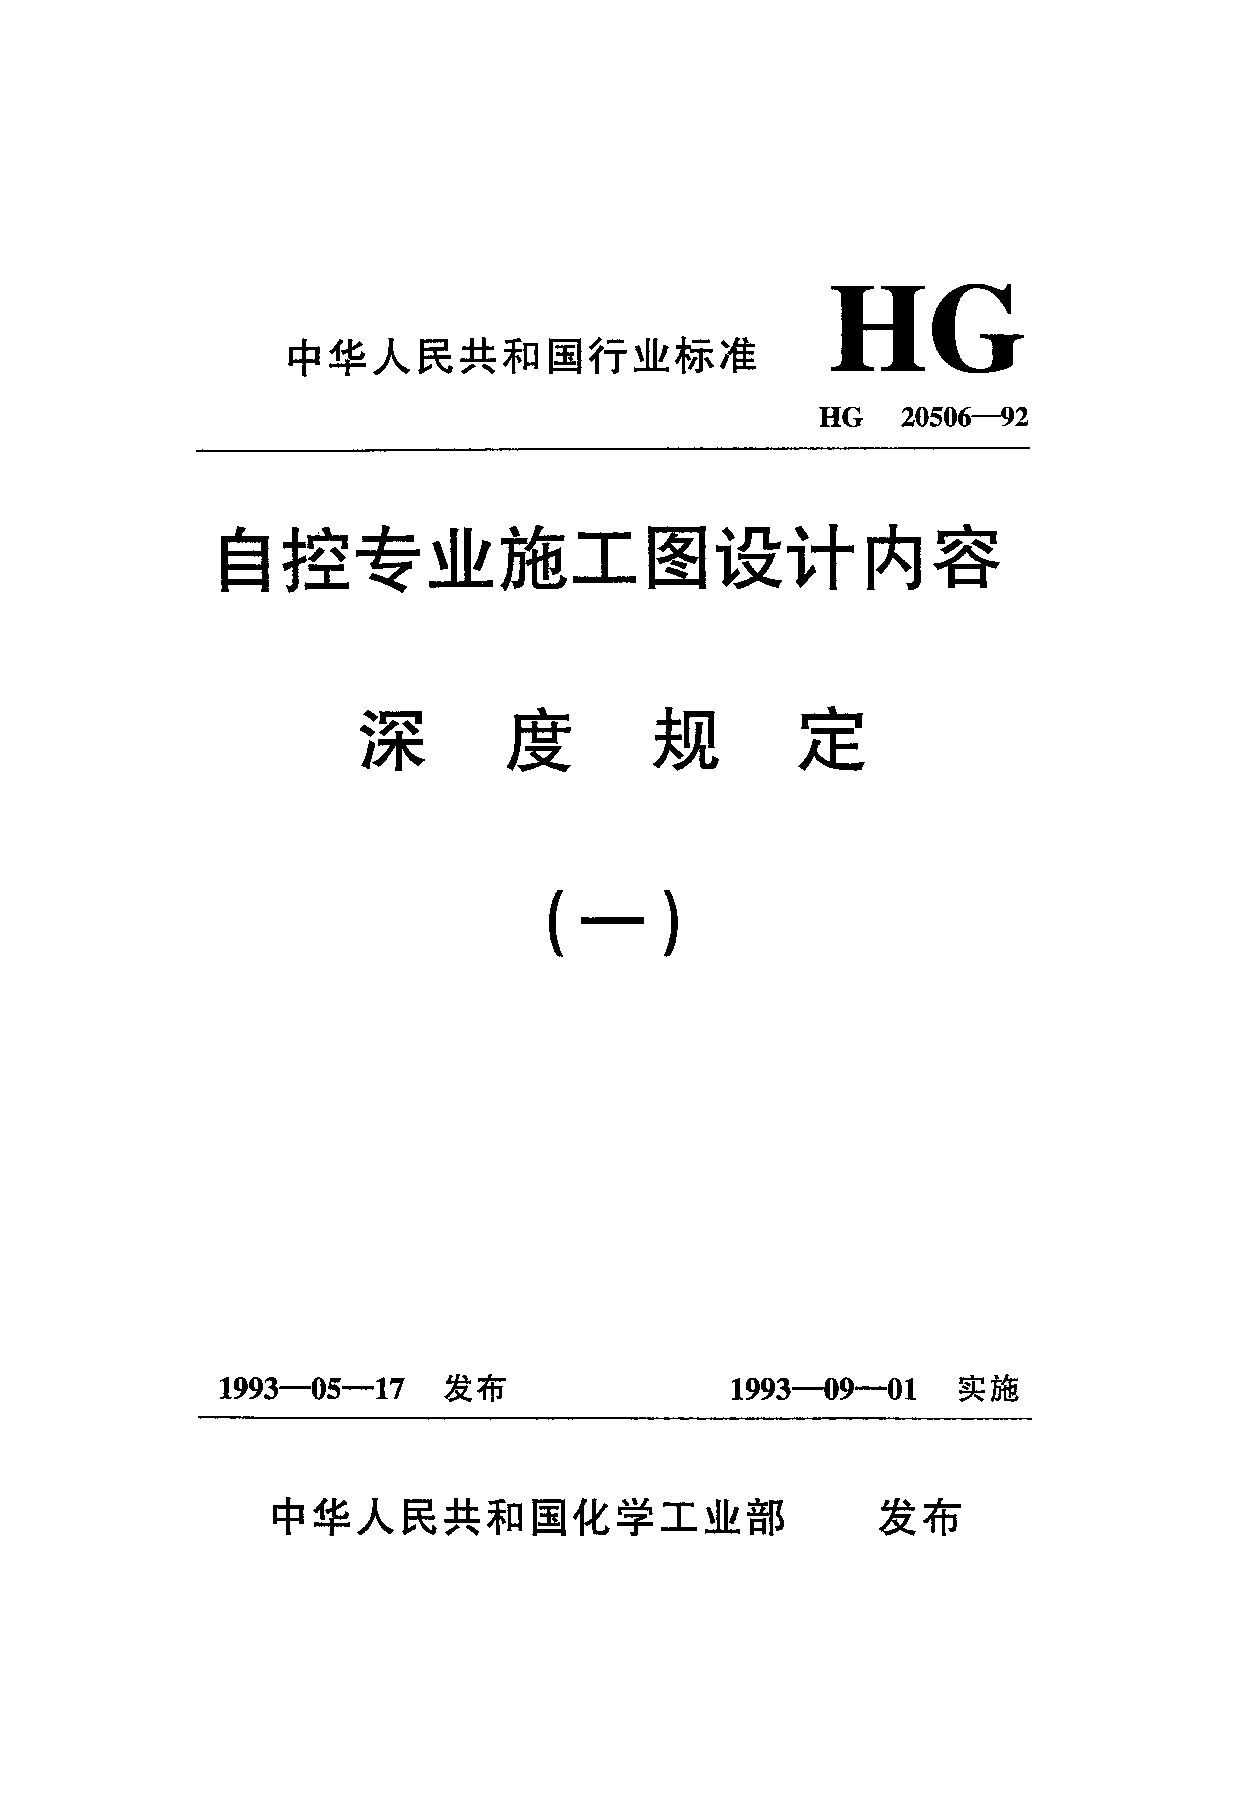 HG 20506-1992封面图